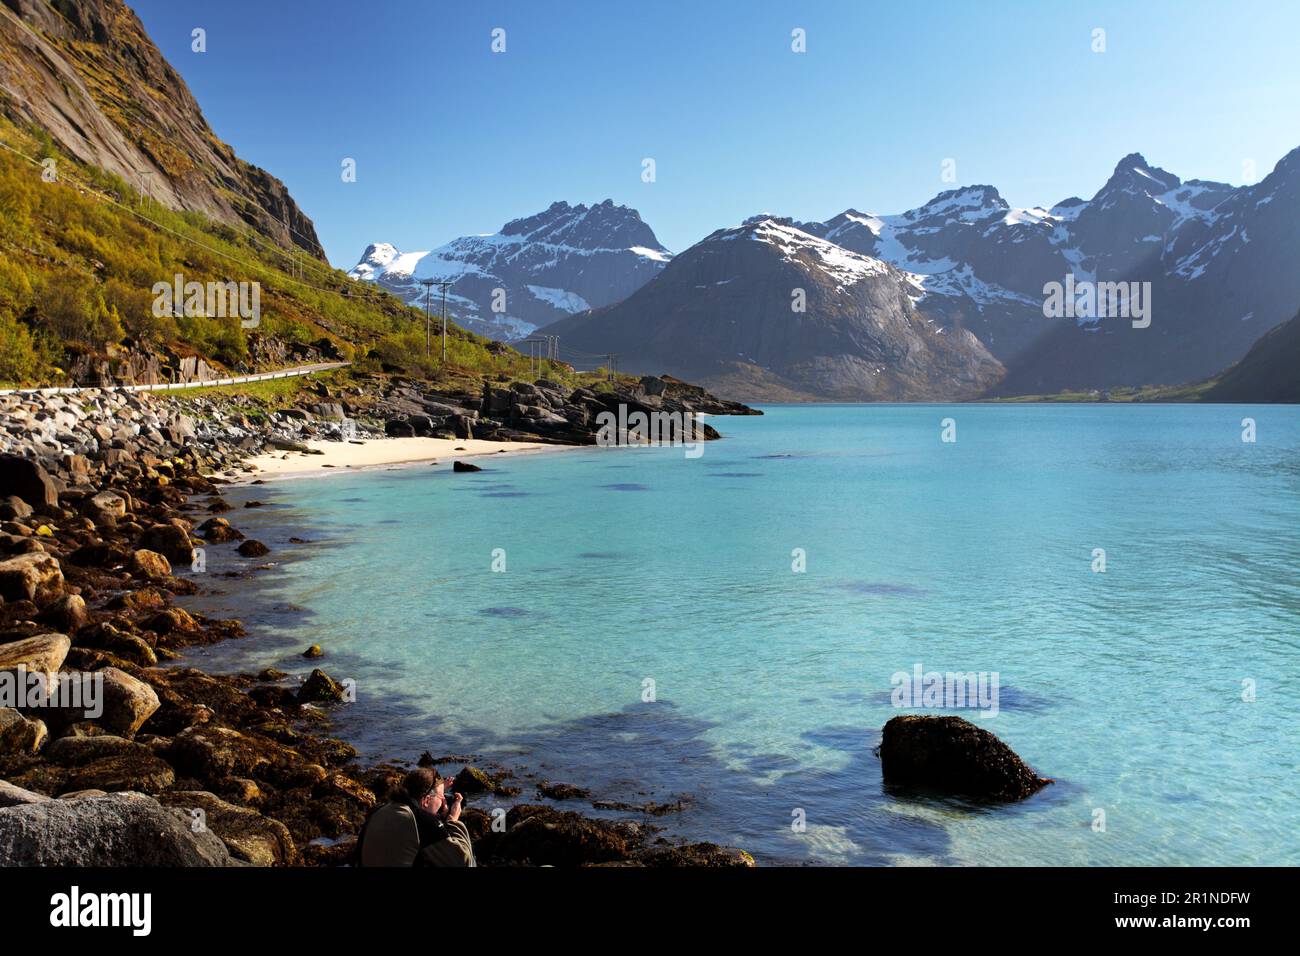 Montagnes et fjord en Norvège - Lofoten Banque D'Images